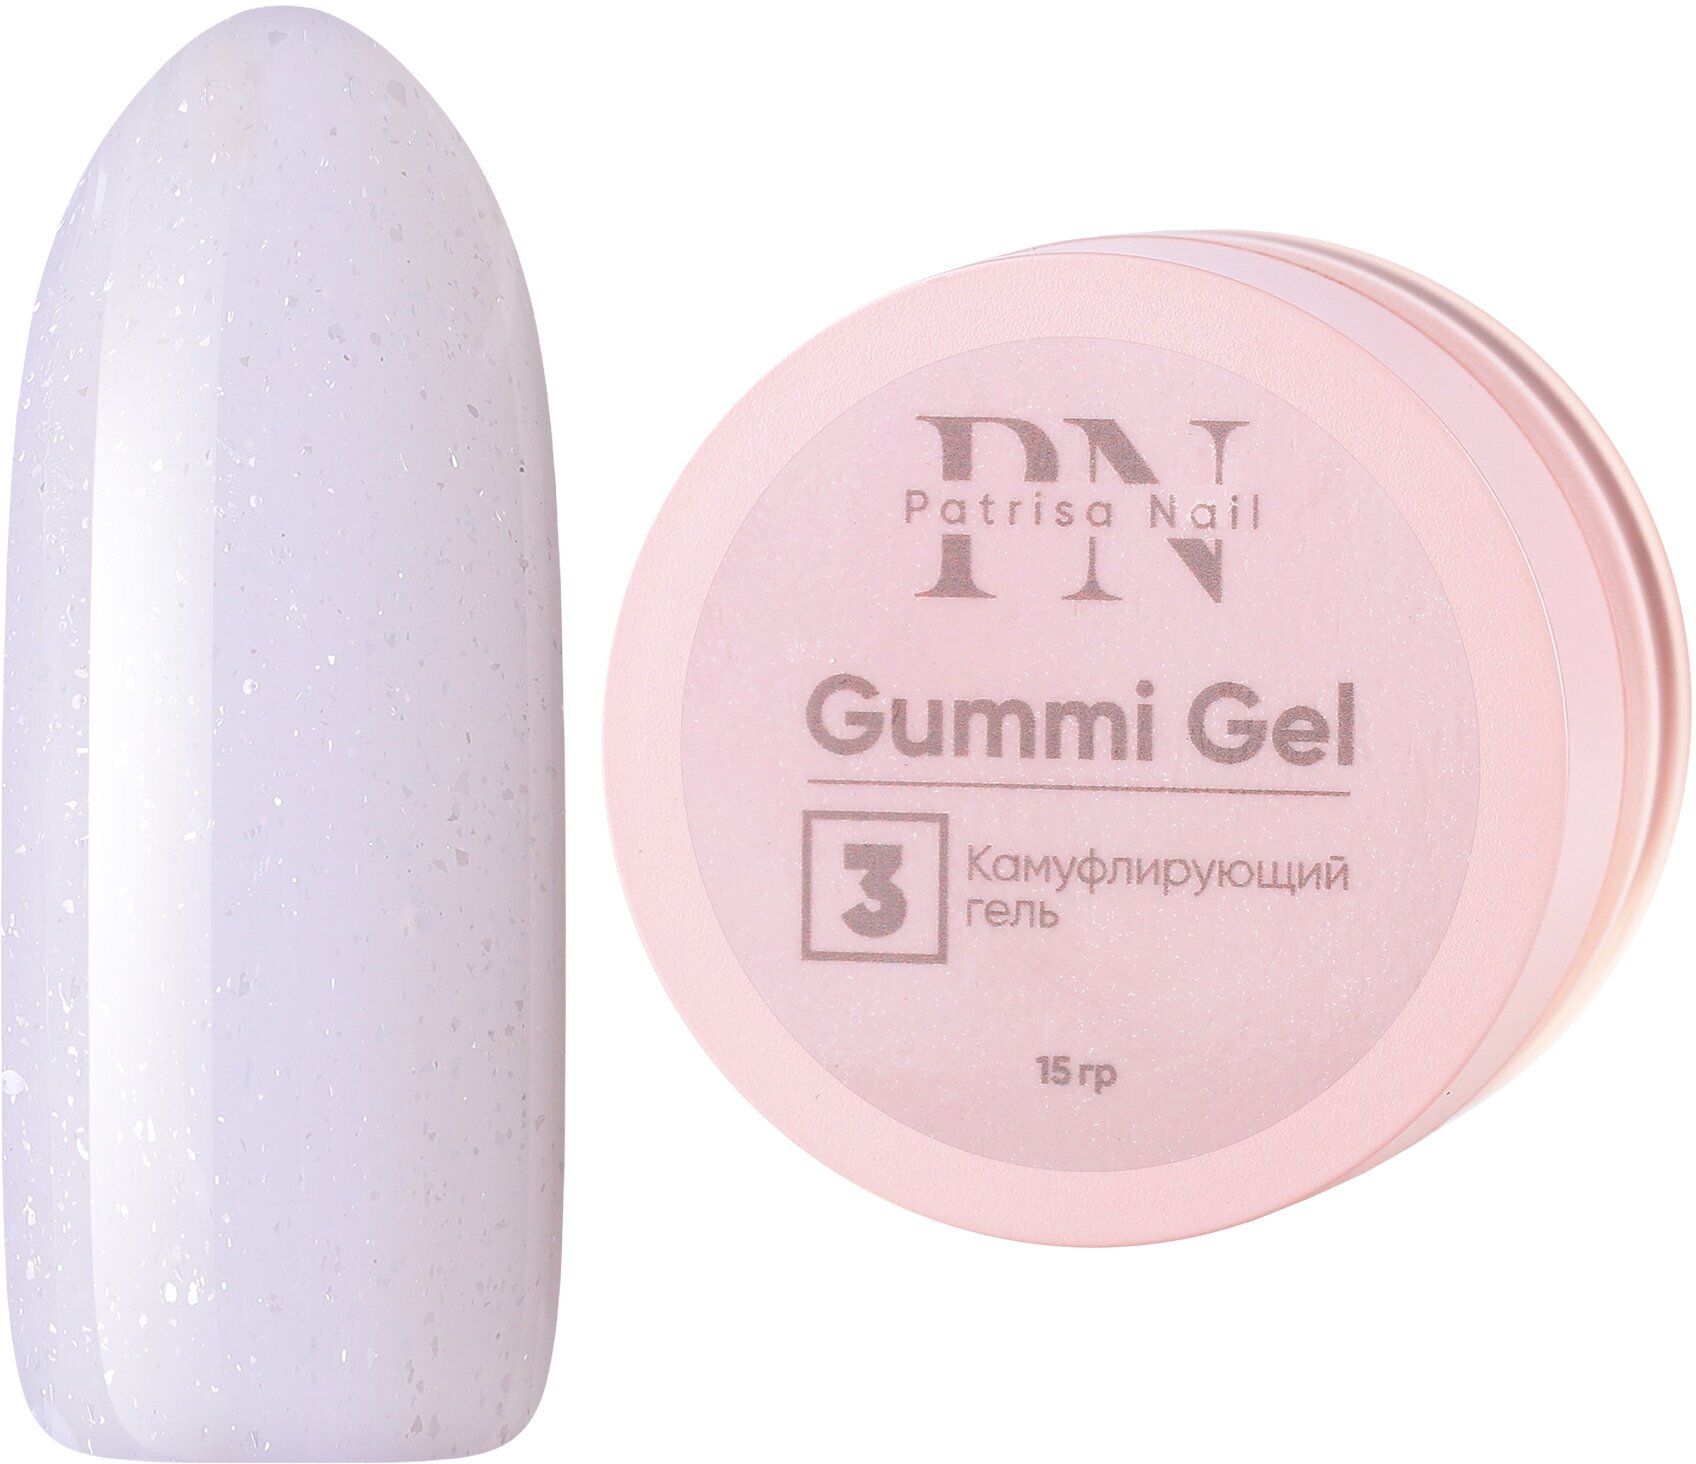 Камуфлирующий гель Patrisa nail, Gummi Gel №3 высокой вязкости, 15 г